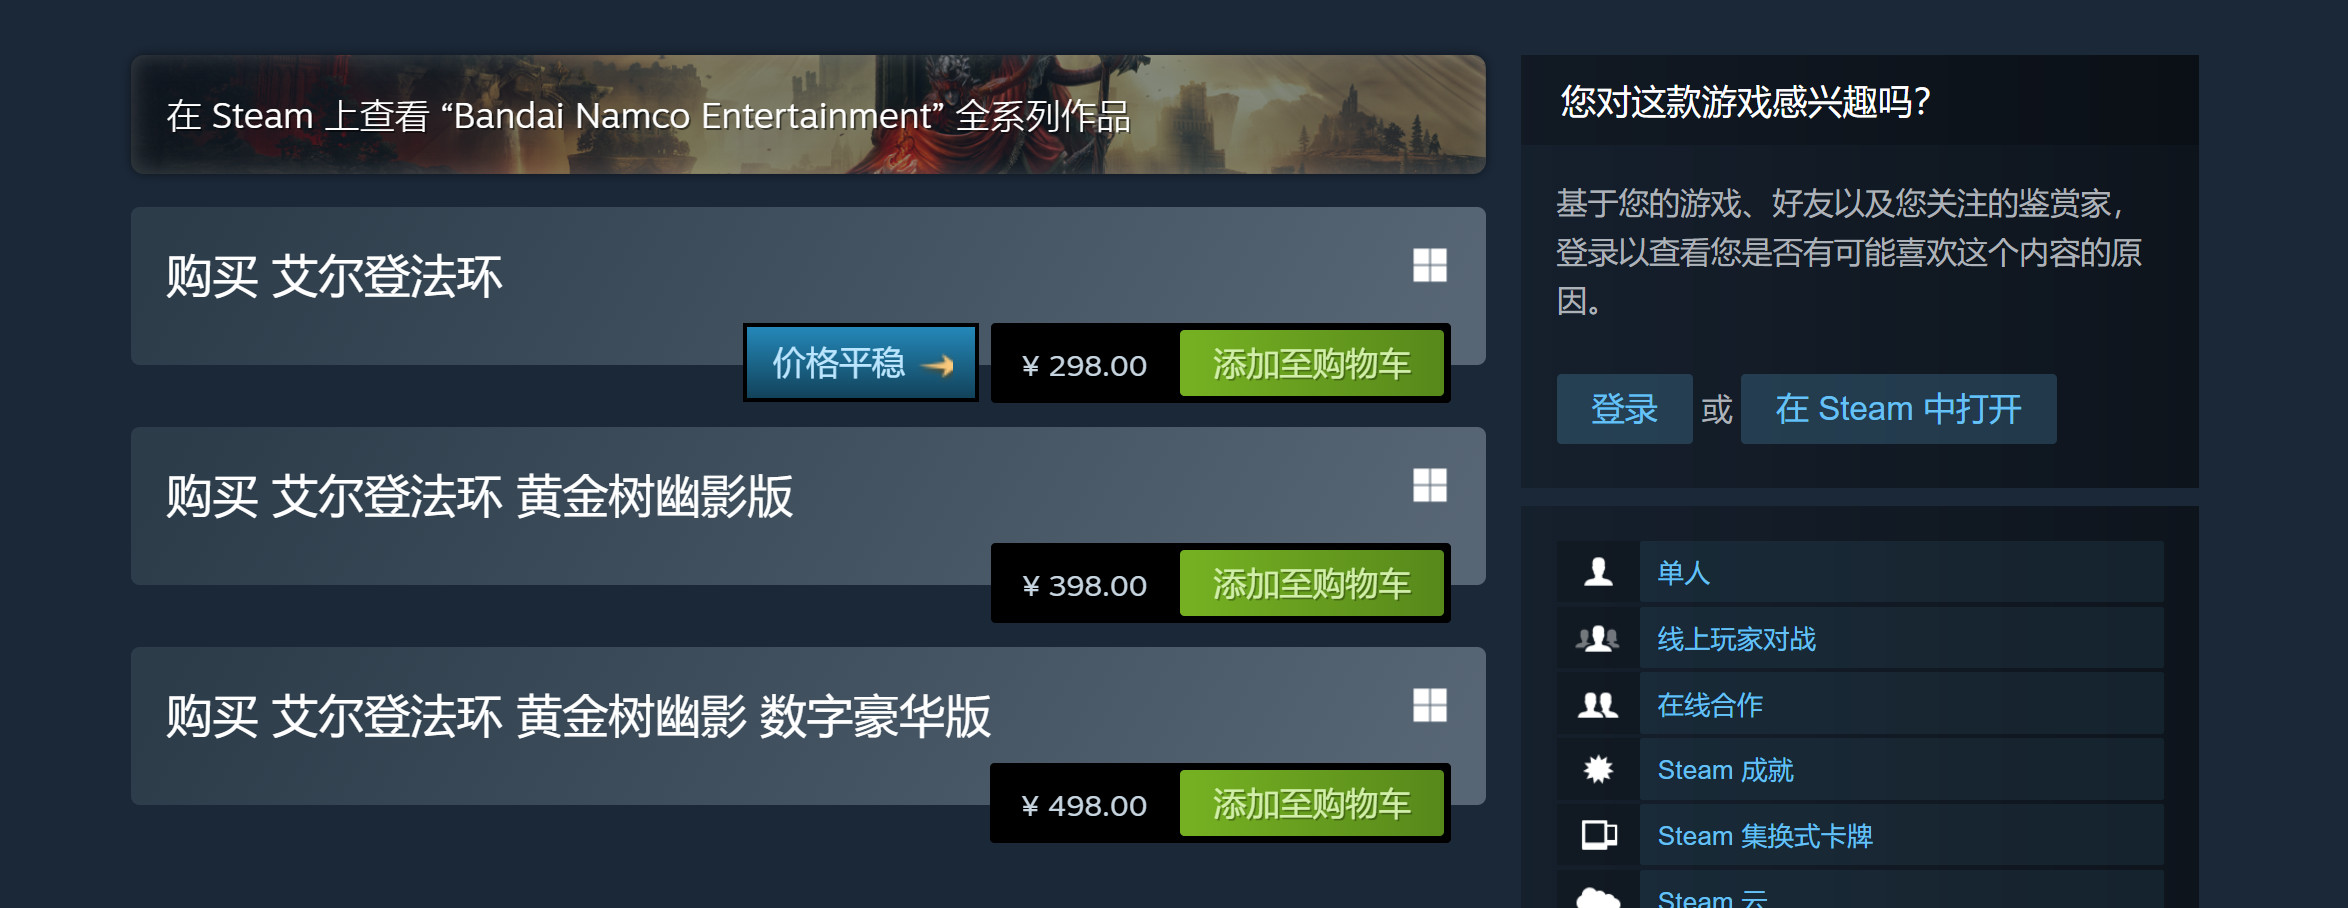 《龍珠戰士Z》Steam新史低促銷 當前僅售29.7元